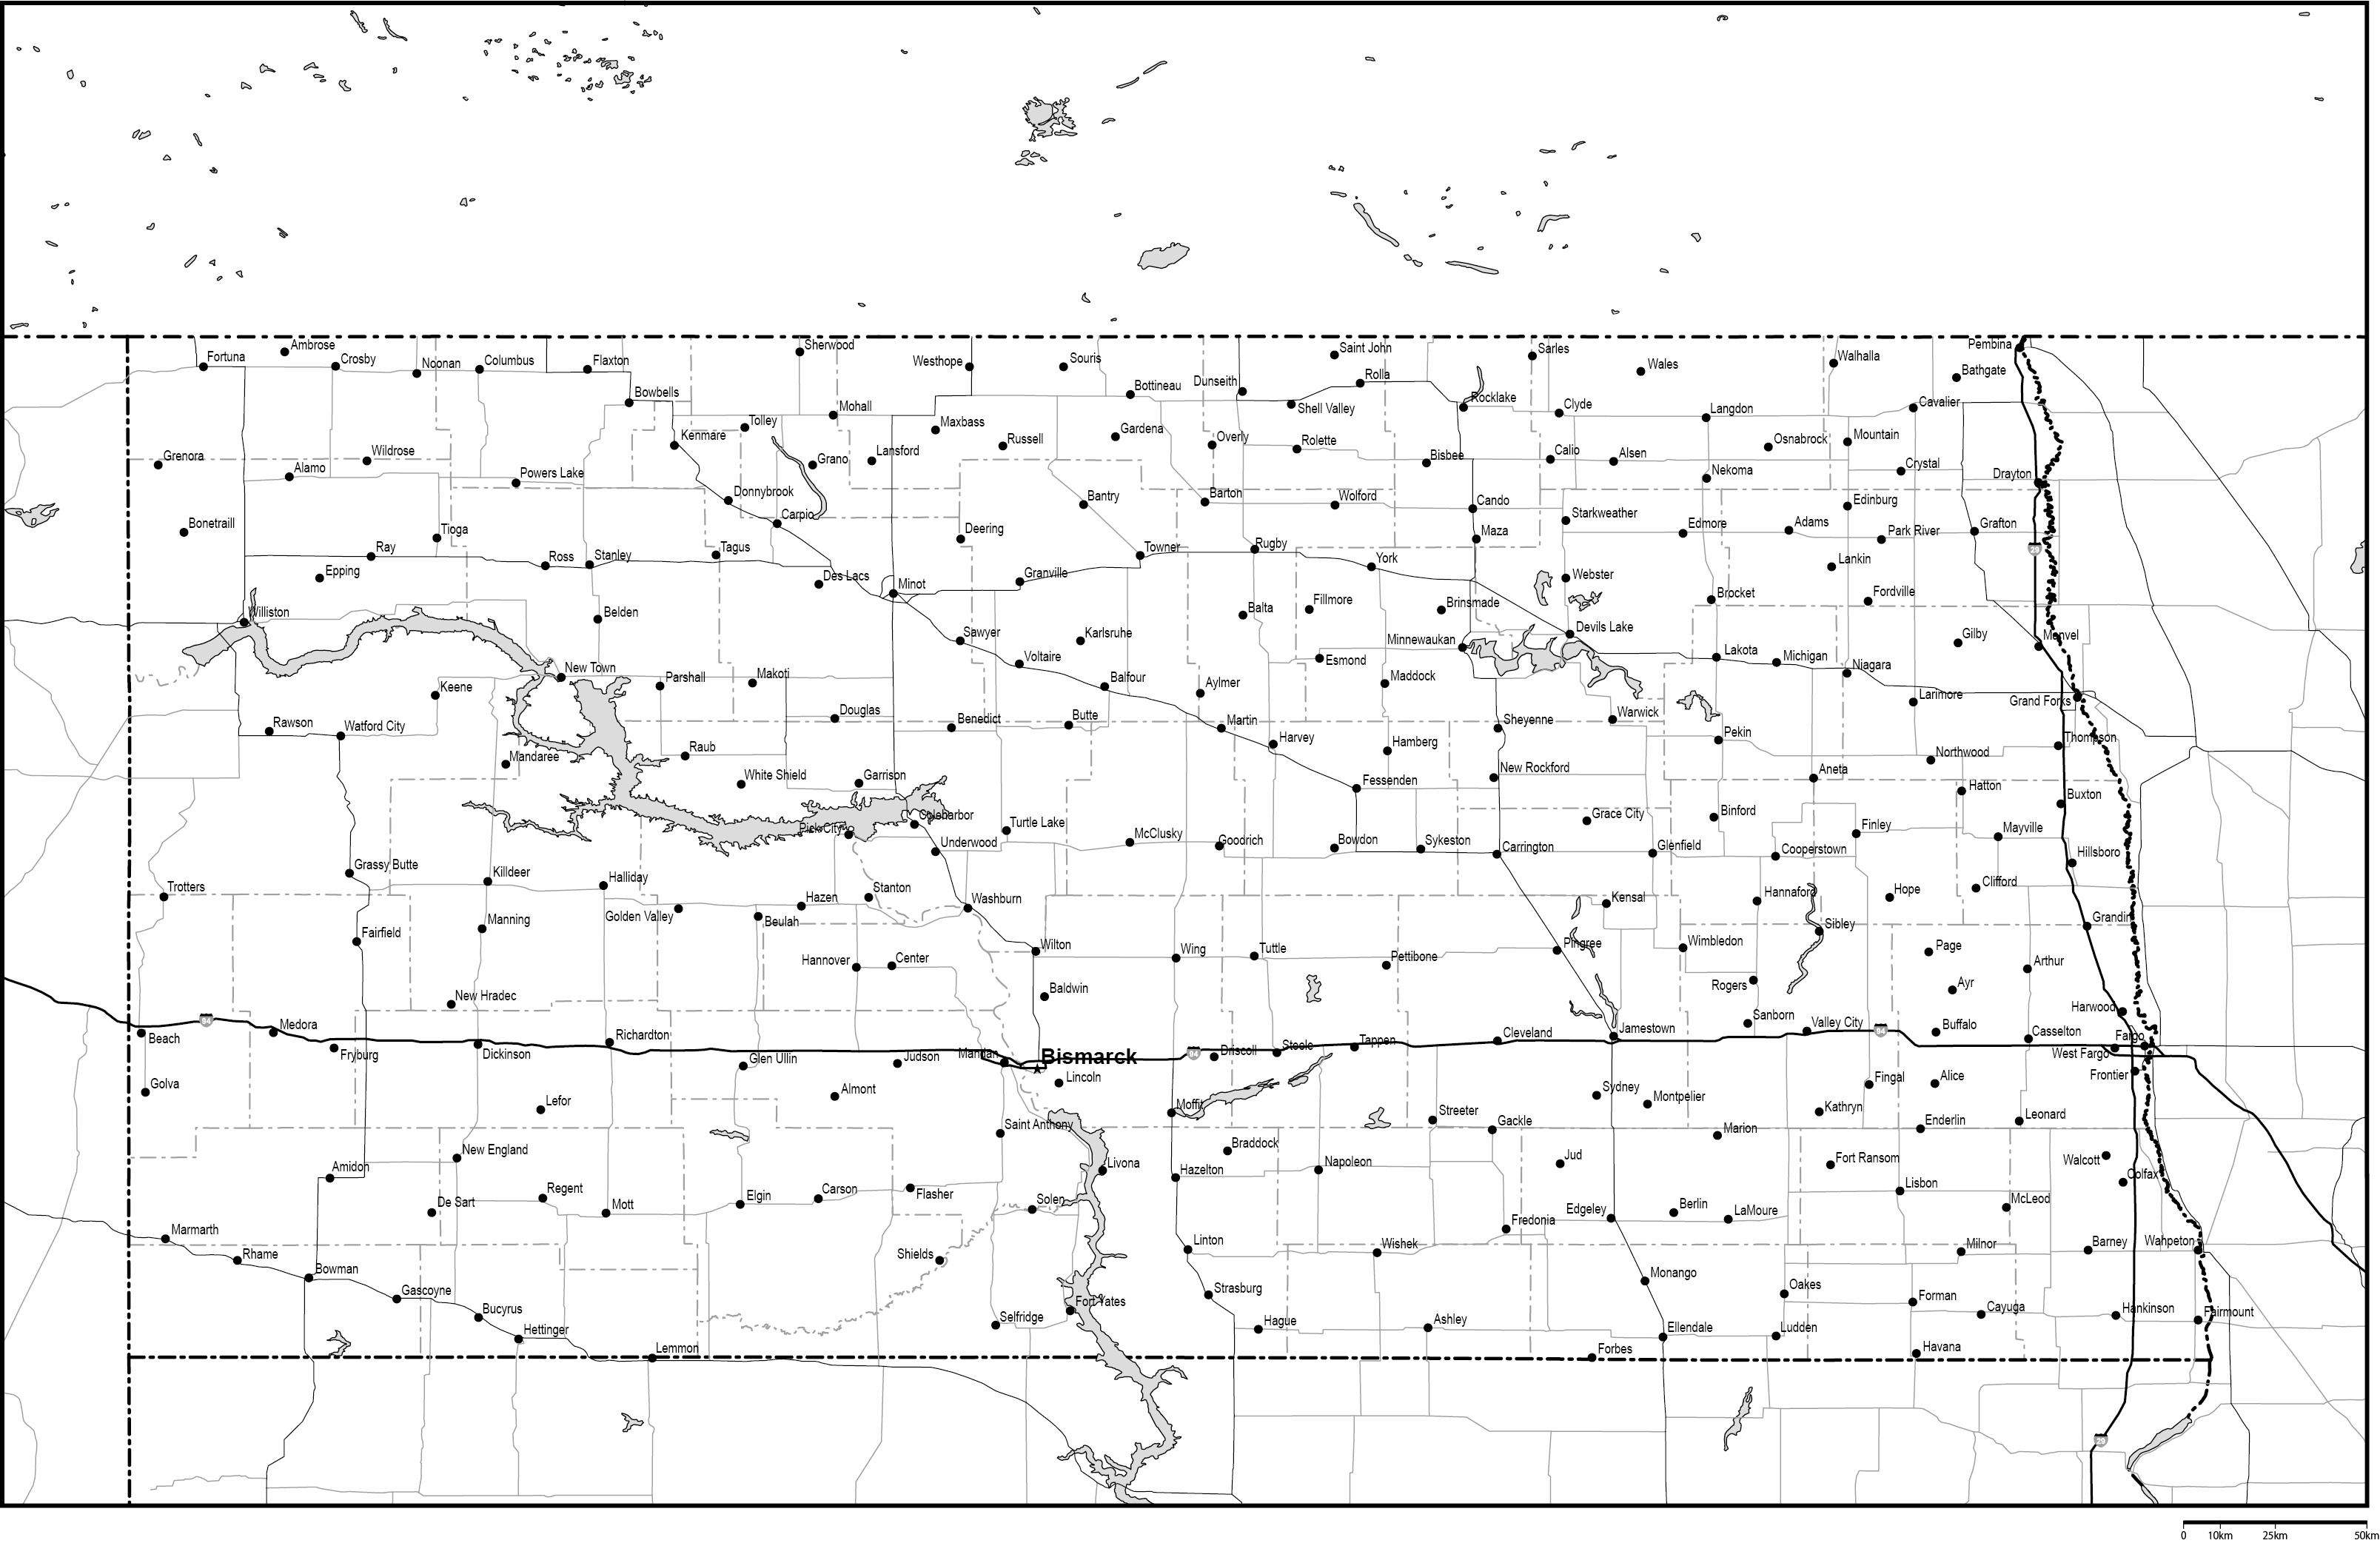 ノースダコタ州郡分け白地図州都・主な都市・道路あり(英語)フリーデータの画像